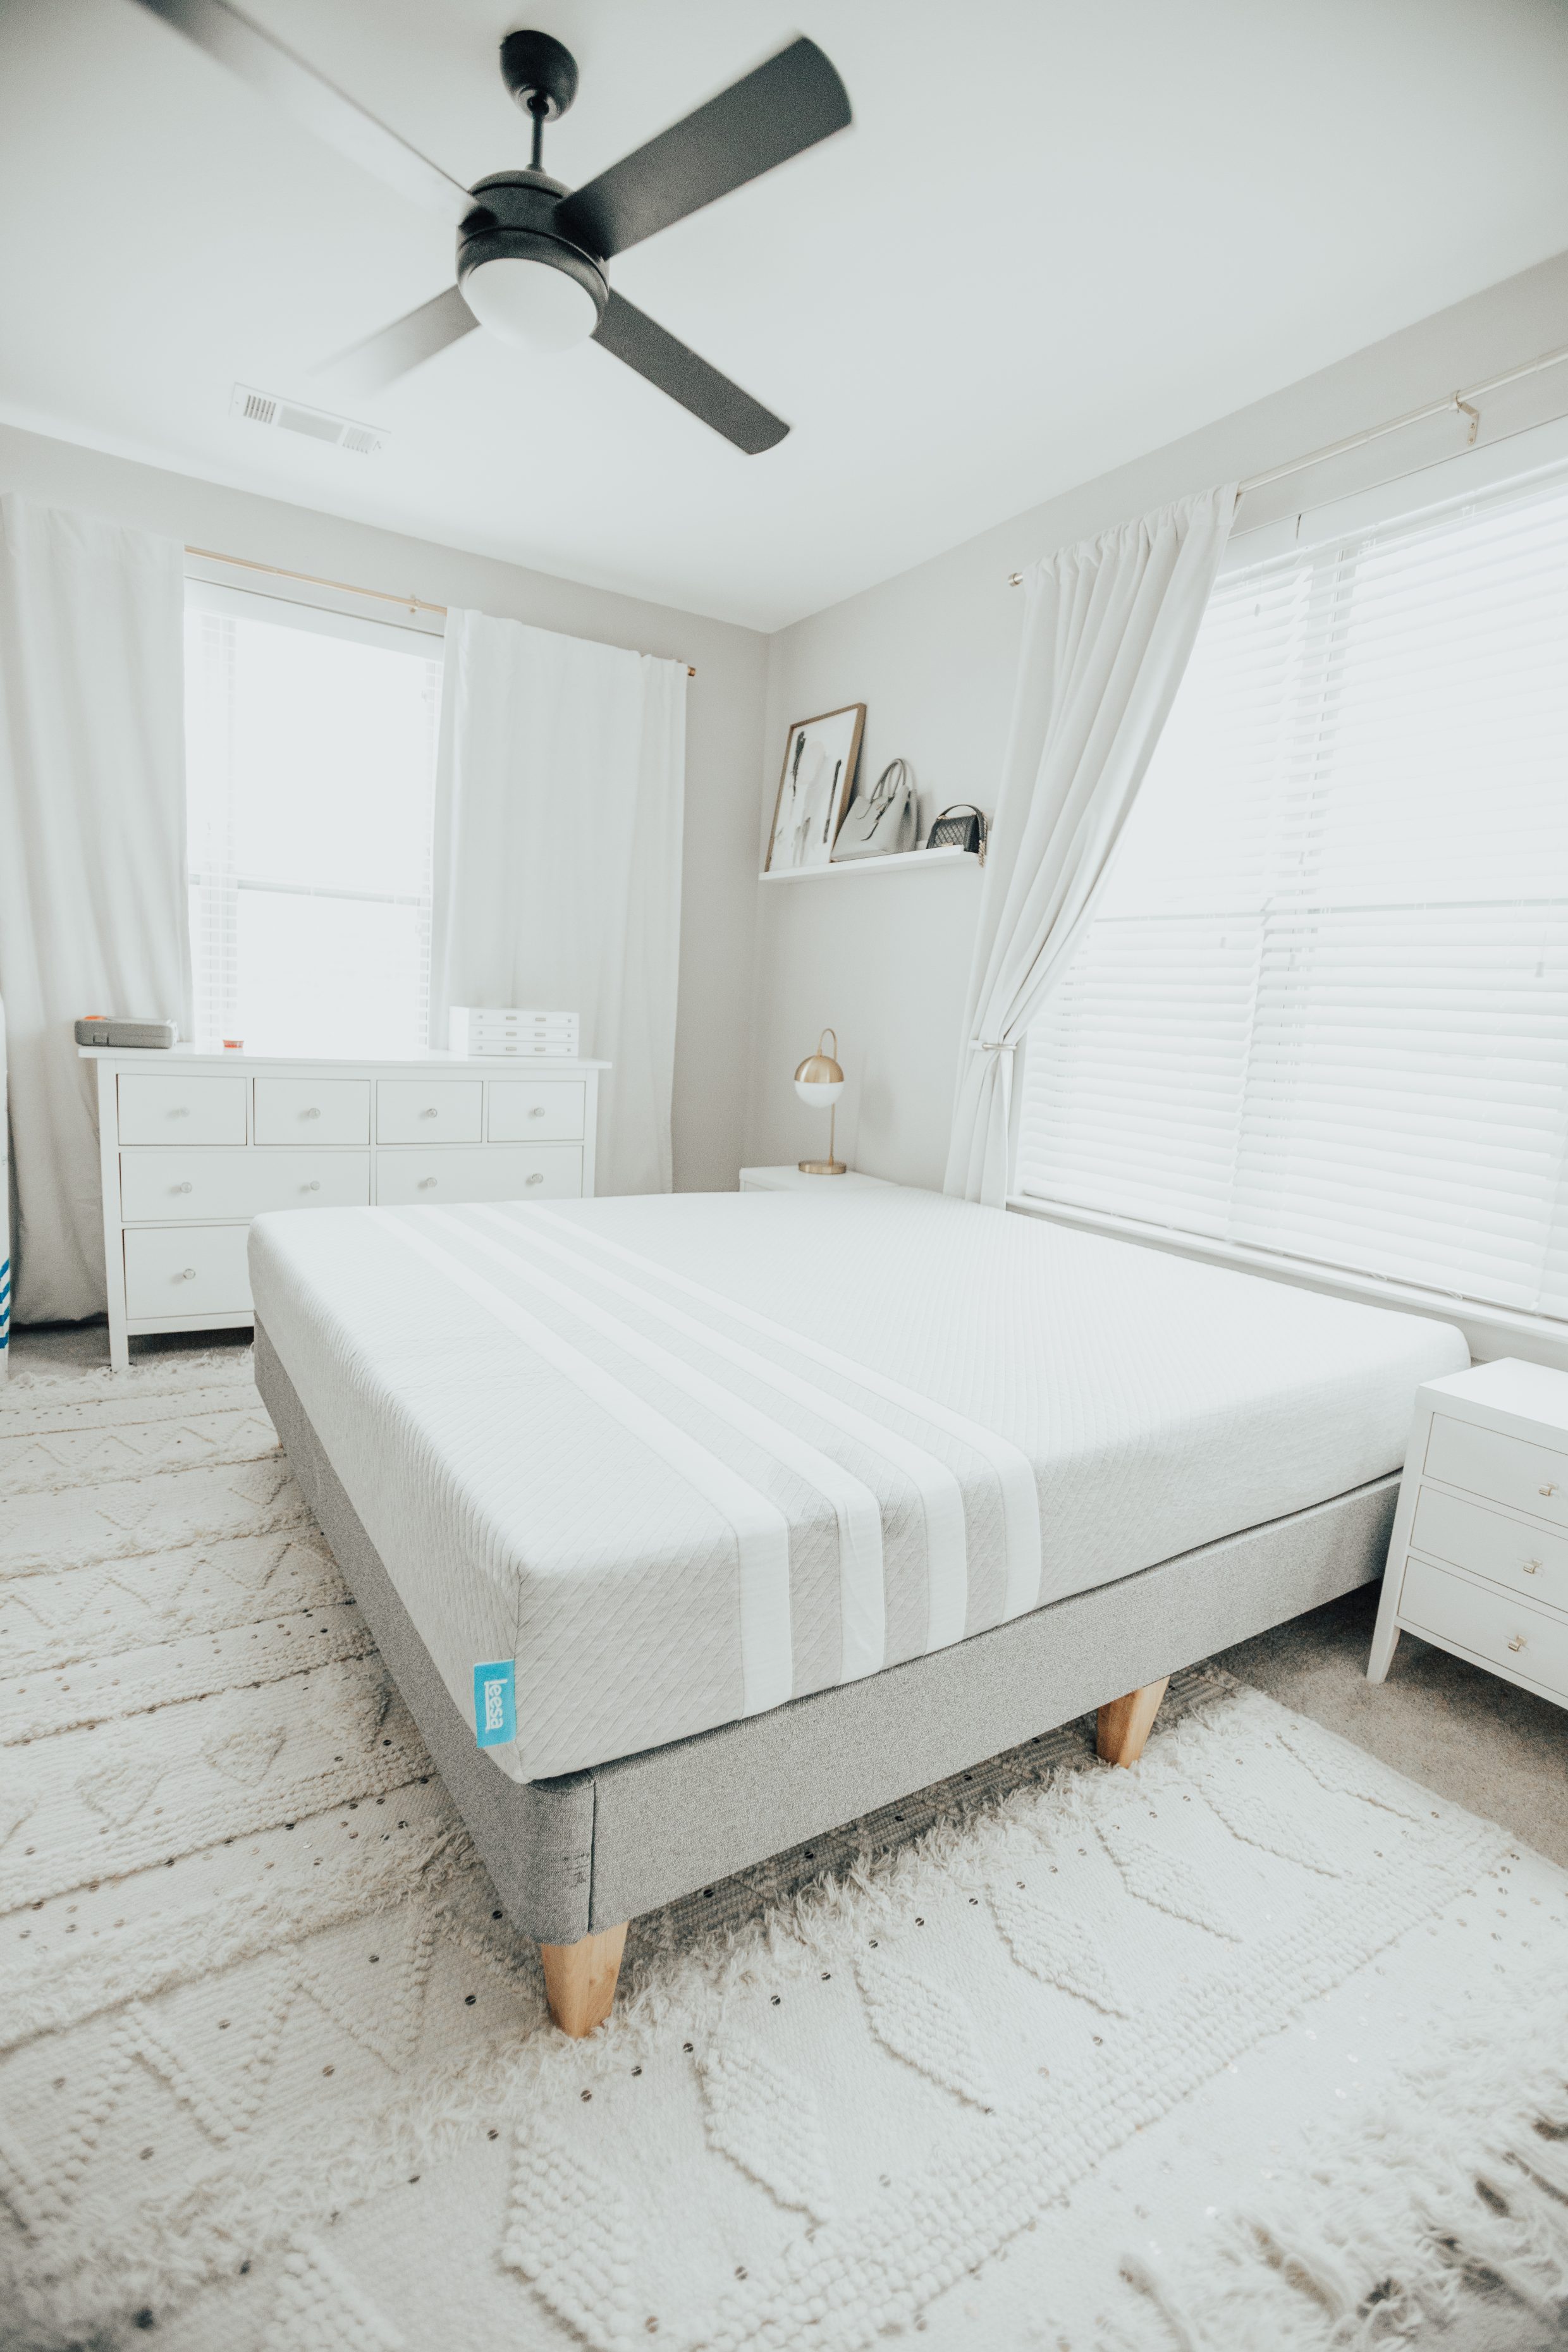 An honest review of buying our Leesa mattress online